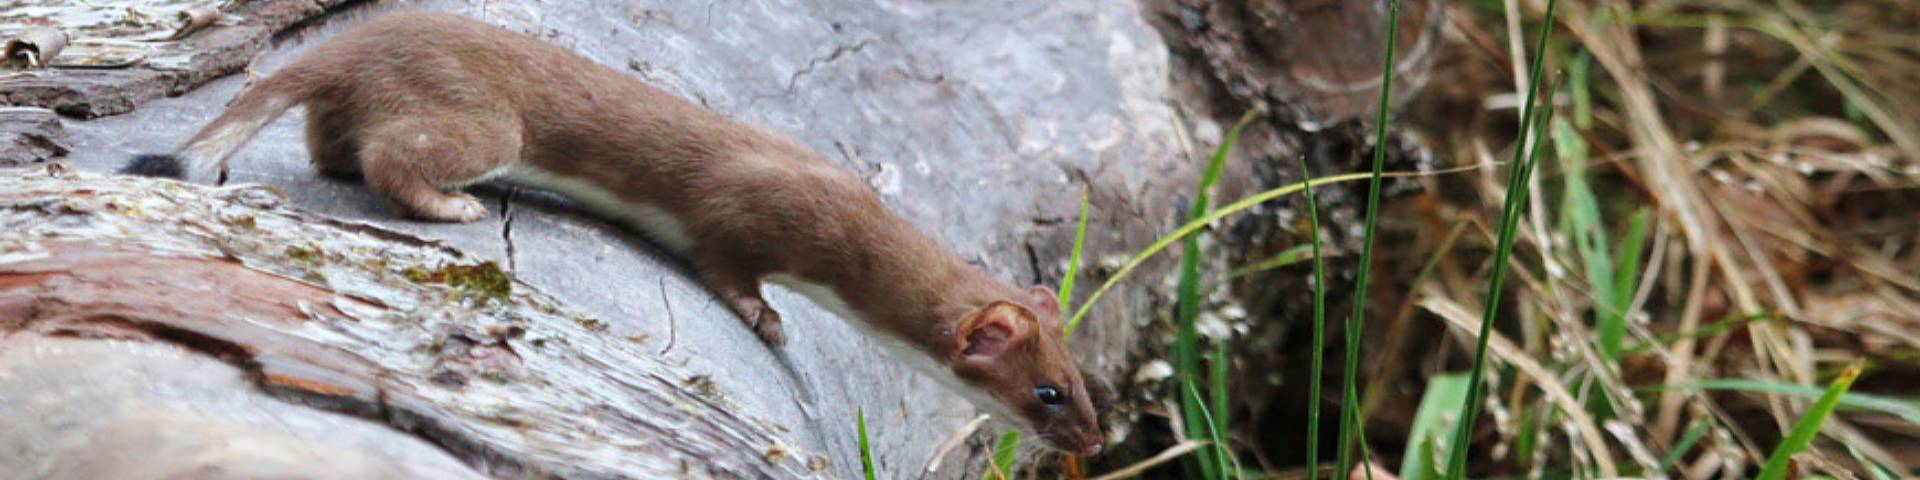 A weasel on a fallen tree